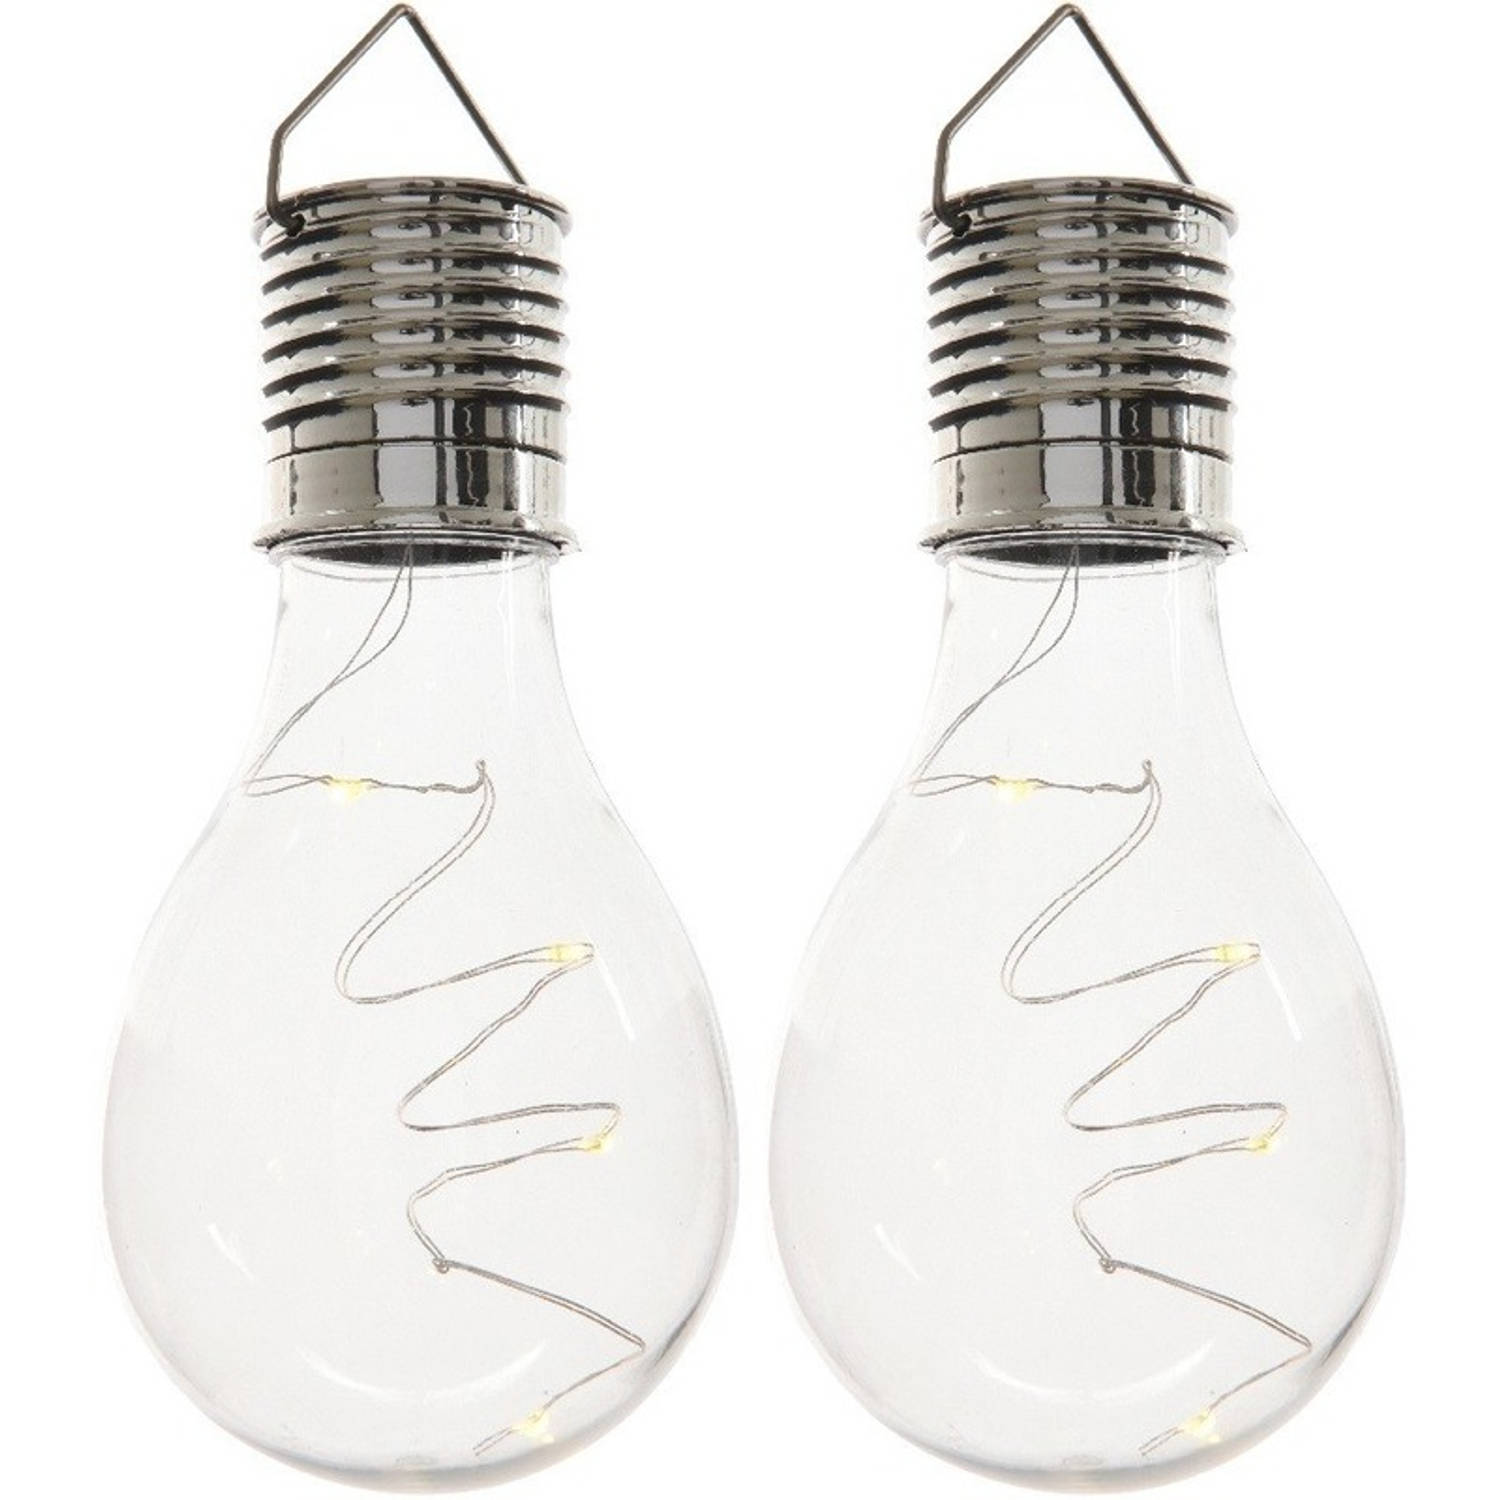 2x Buitenlampen-tuinlampen Lampbolletjes-peertjes 14 Cm Transparant Buitenverlichting